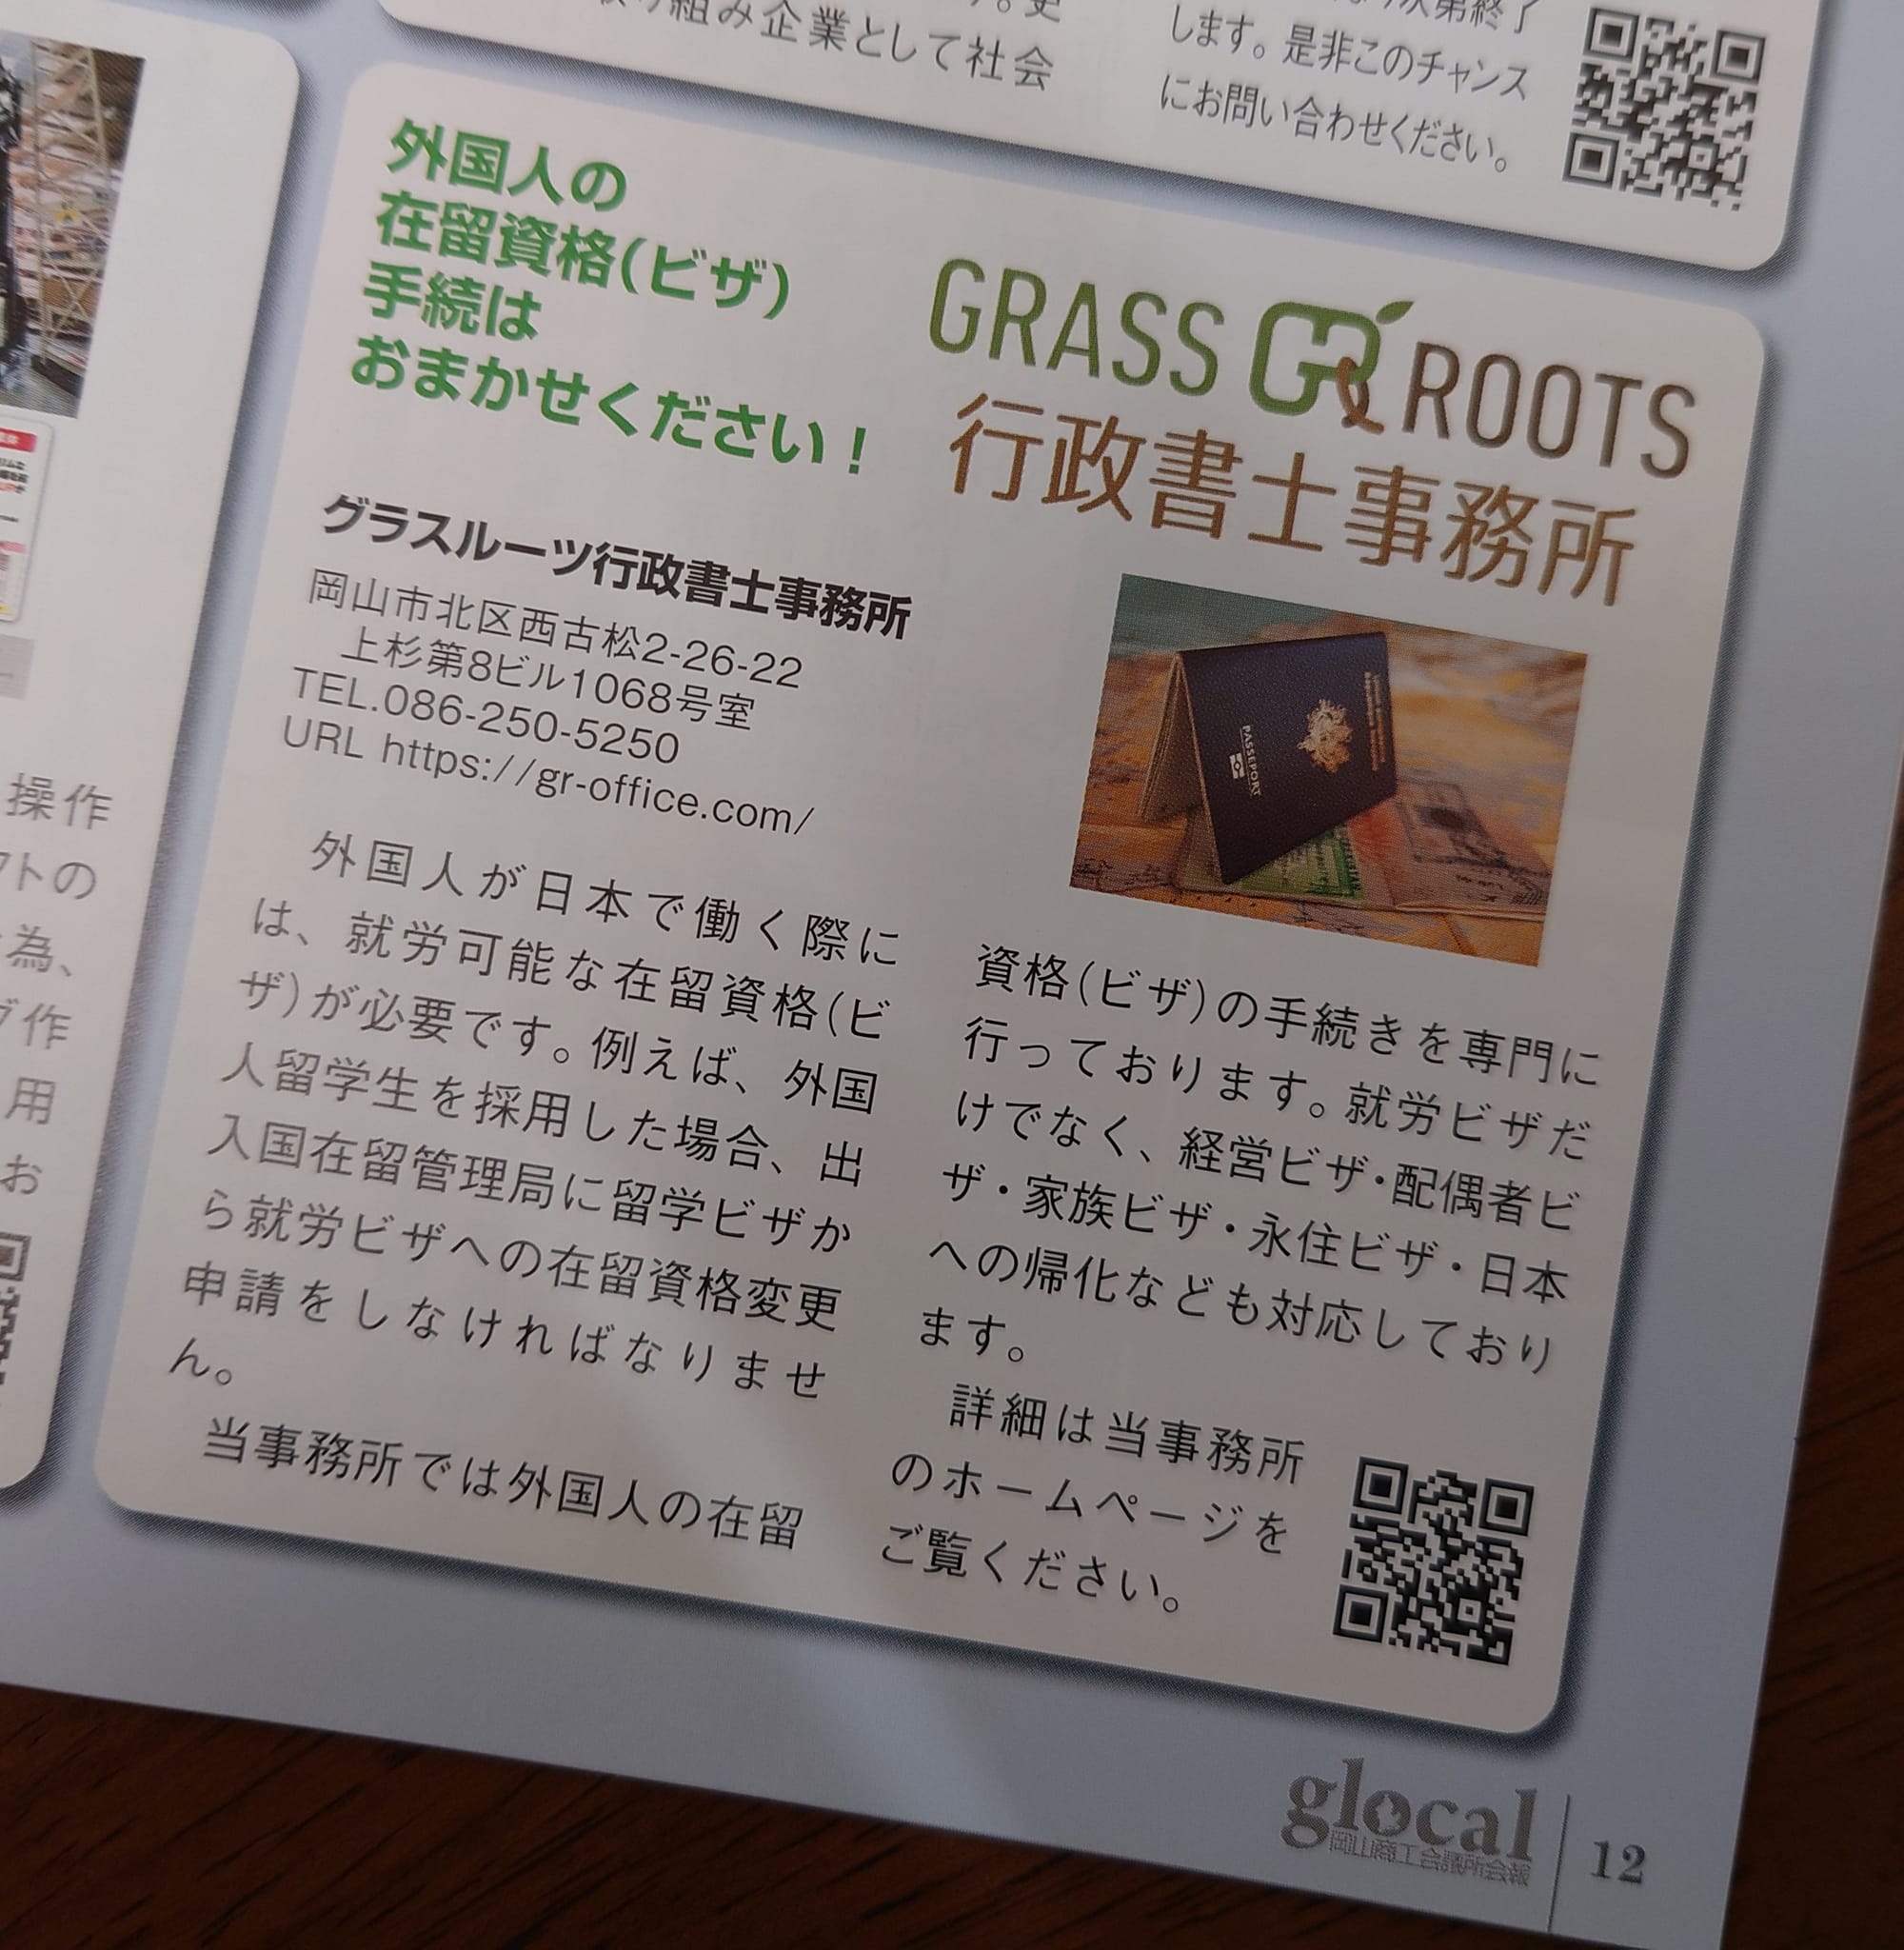 岡山商工会議所会報「glocal」に掲載頂きました。